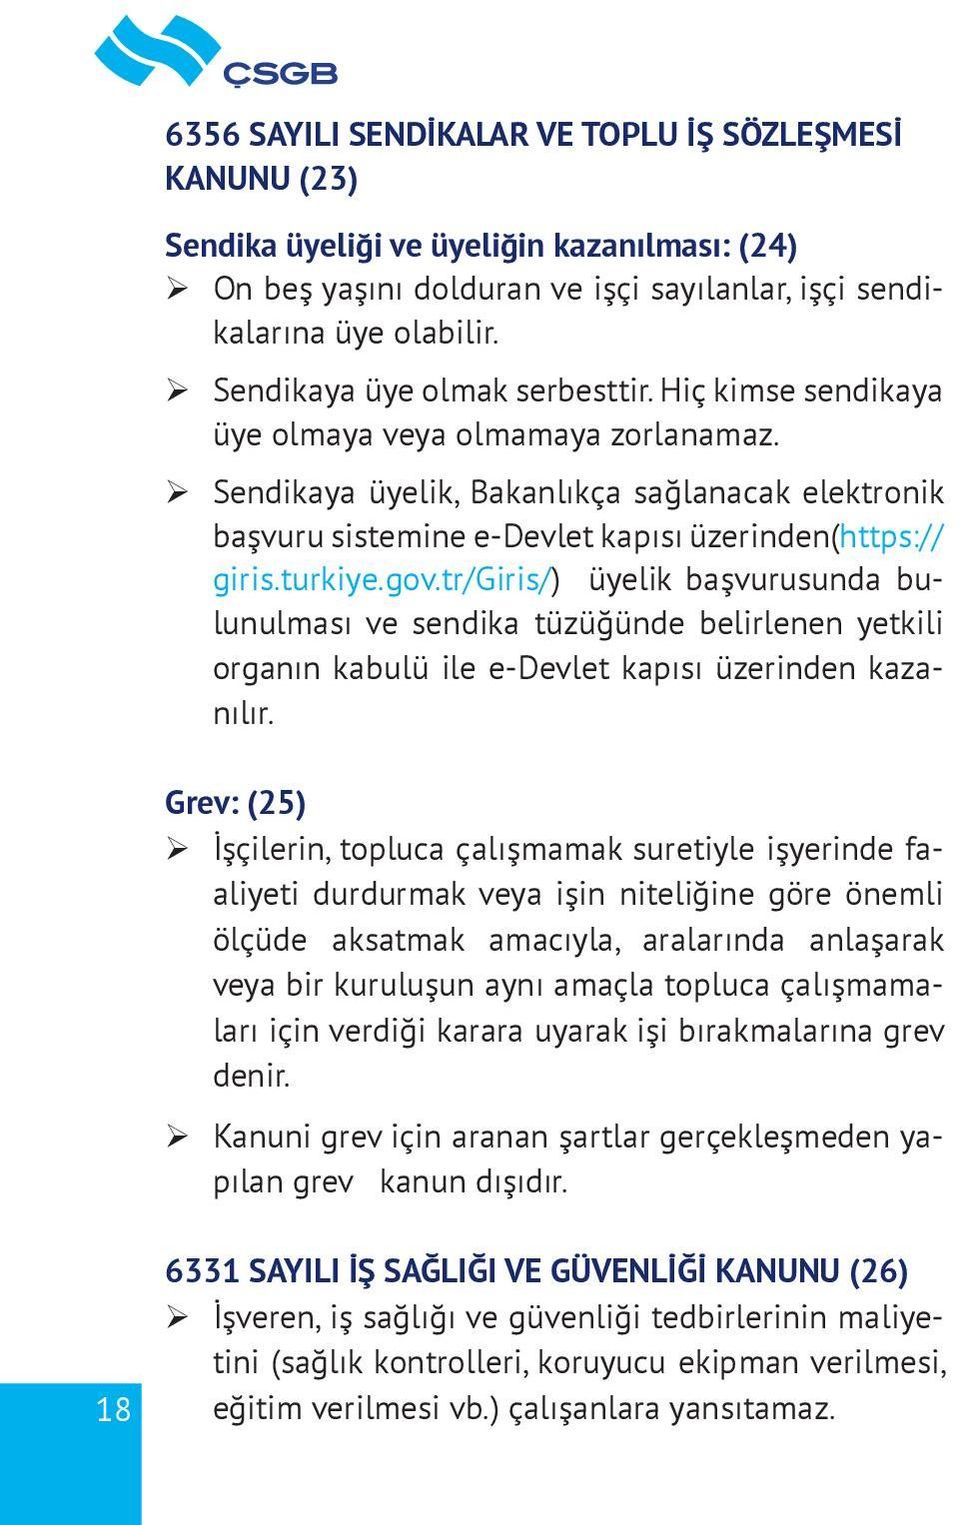 ¾ Sendikaya üyelik, Bakanlıkça sağlanacak elektronik başvuru sistemine e-devlet kapısı üzerinden(https:// giris.turkiye.gov.